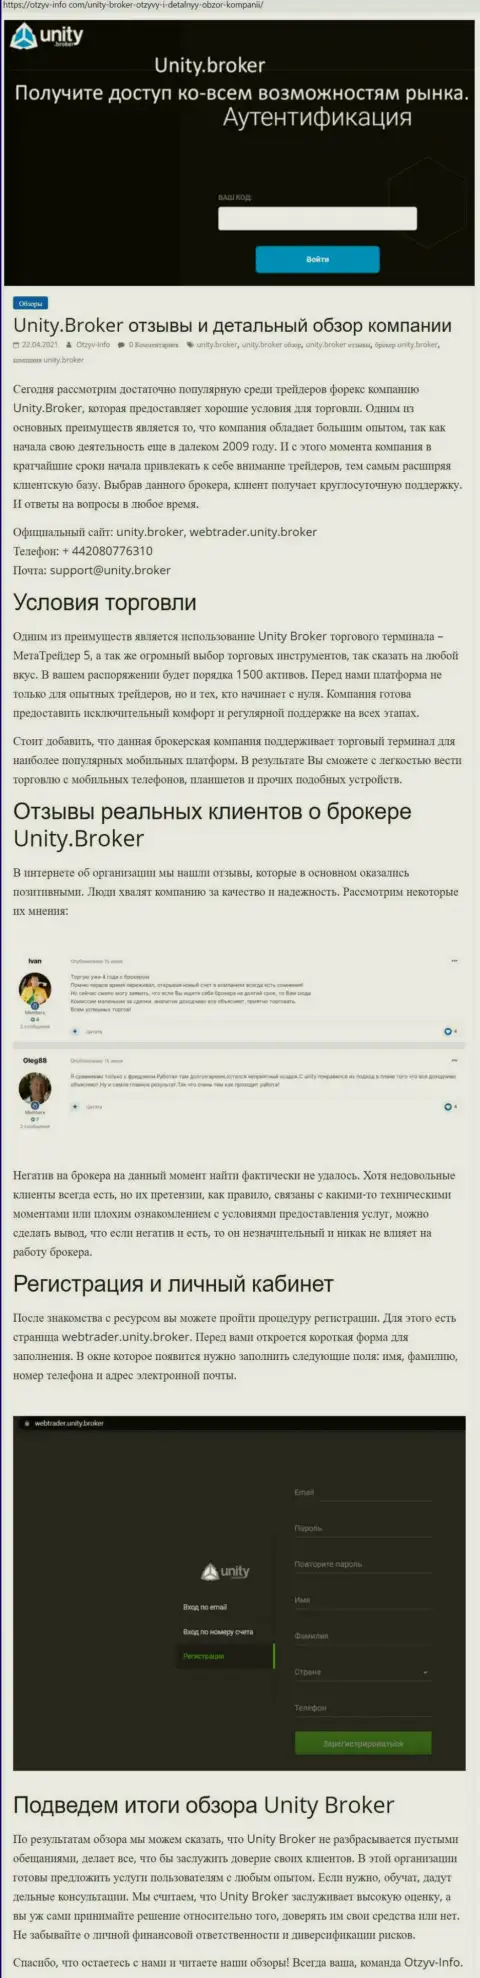 Обзор деятельности форекс-брокерской компании Юнити Брокер на веб-ресурсе otzyv-info com